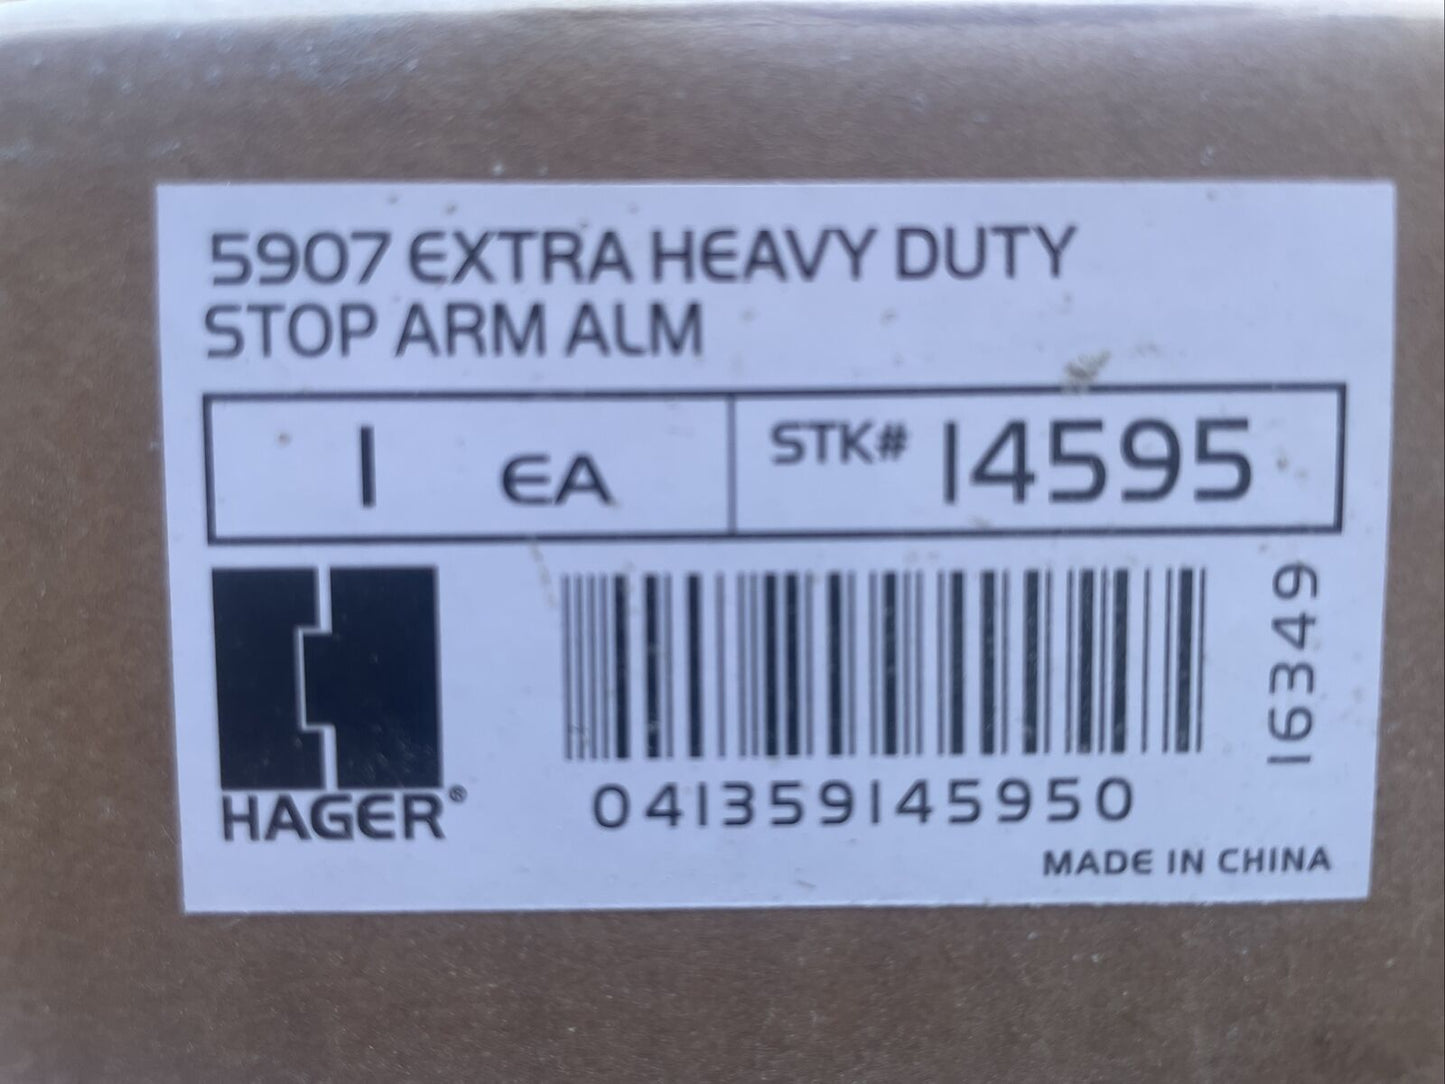 Hager 199866 5907 Aluminum EXTRA HEAVY DUTY STOP ARM 14595